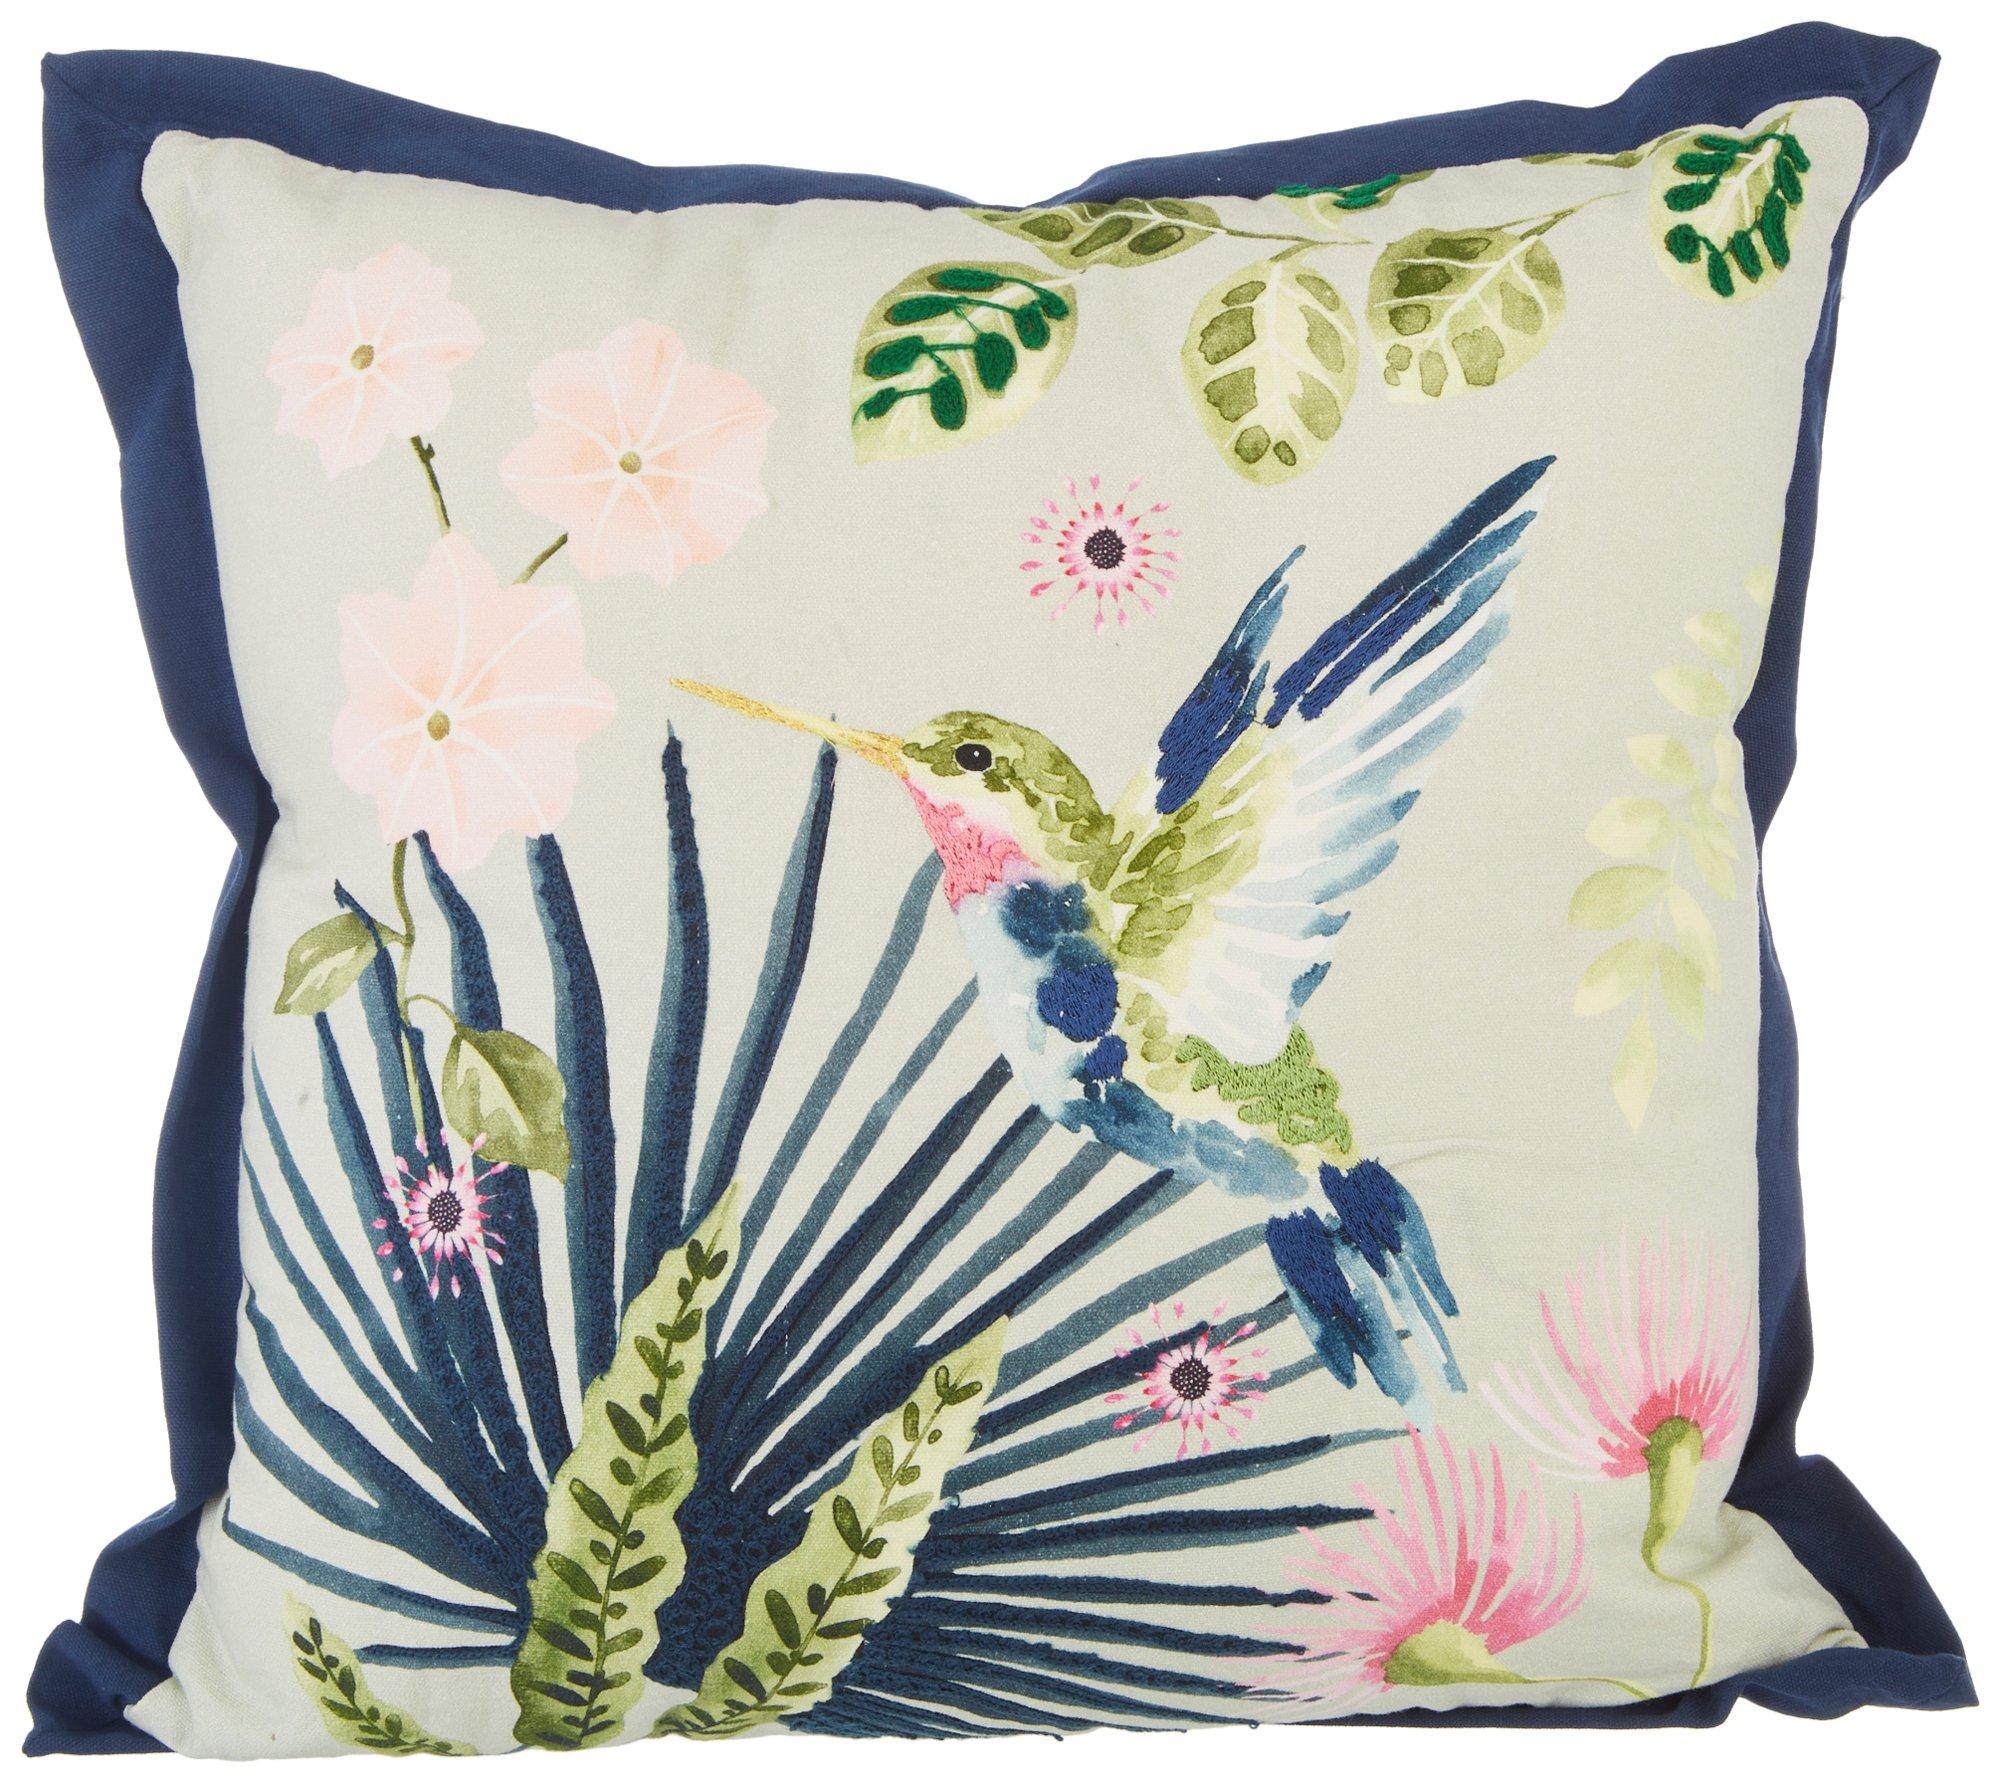 18x18 Hummingbird Decorative Pillow